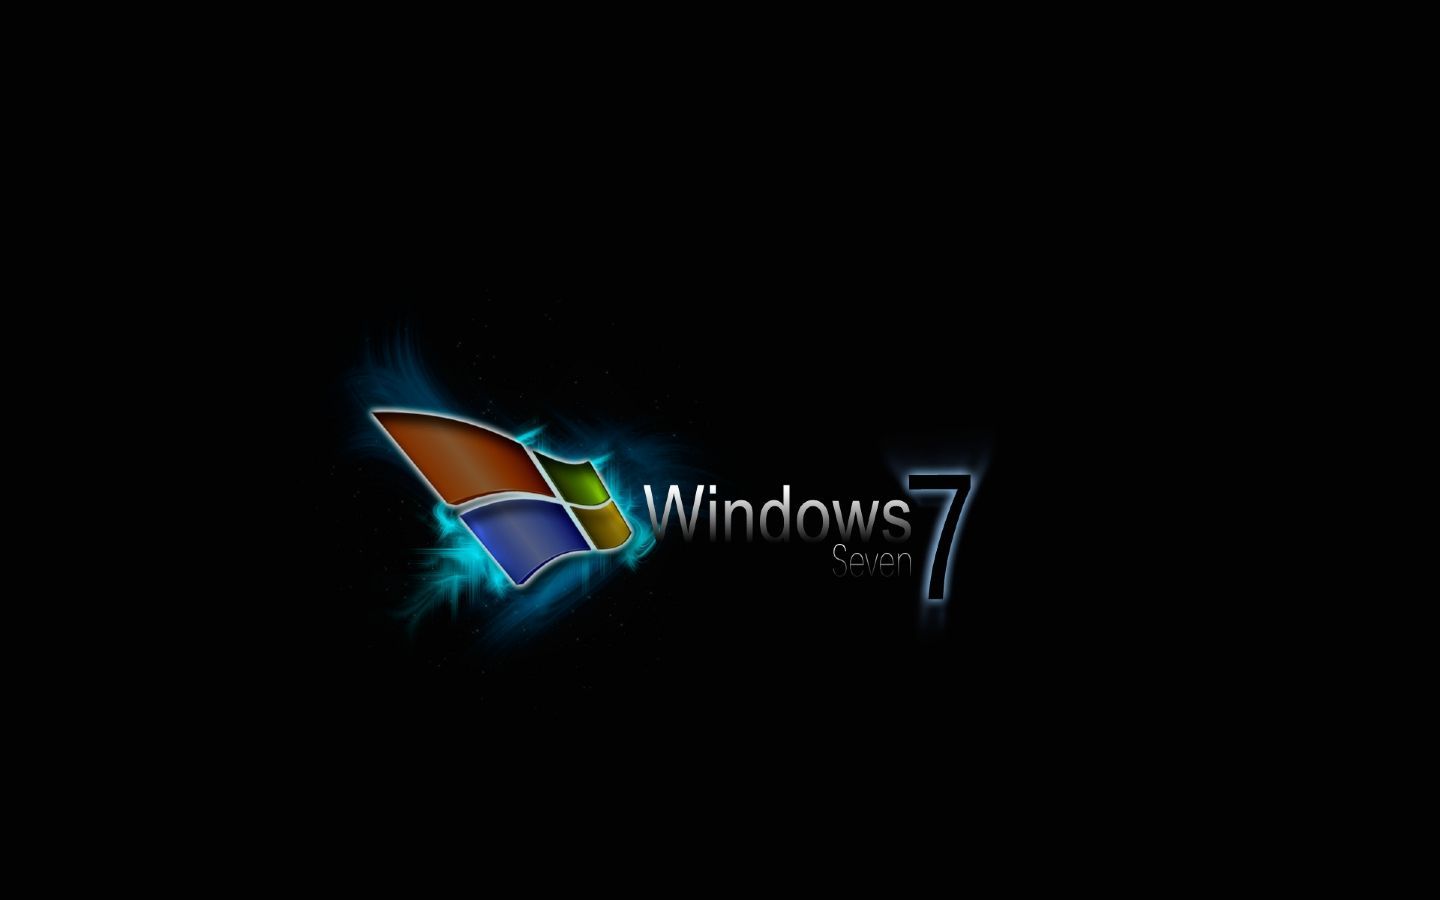 [46+] Windows 7 Ultimate Wallpaper 1280x800 | WallpaperSafari.com